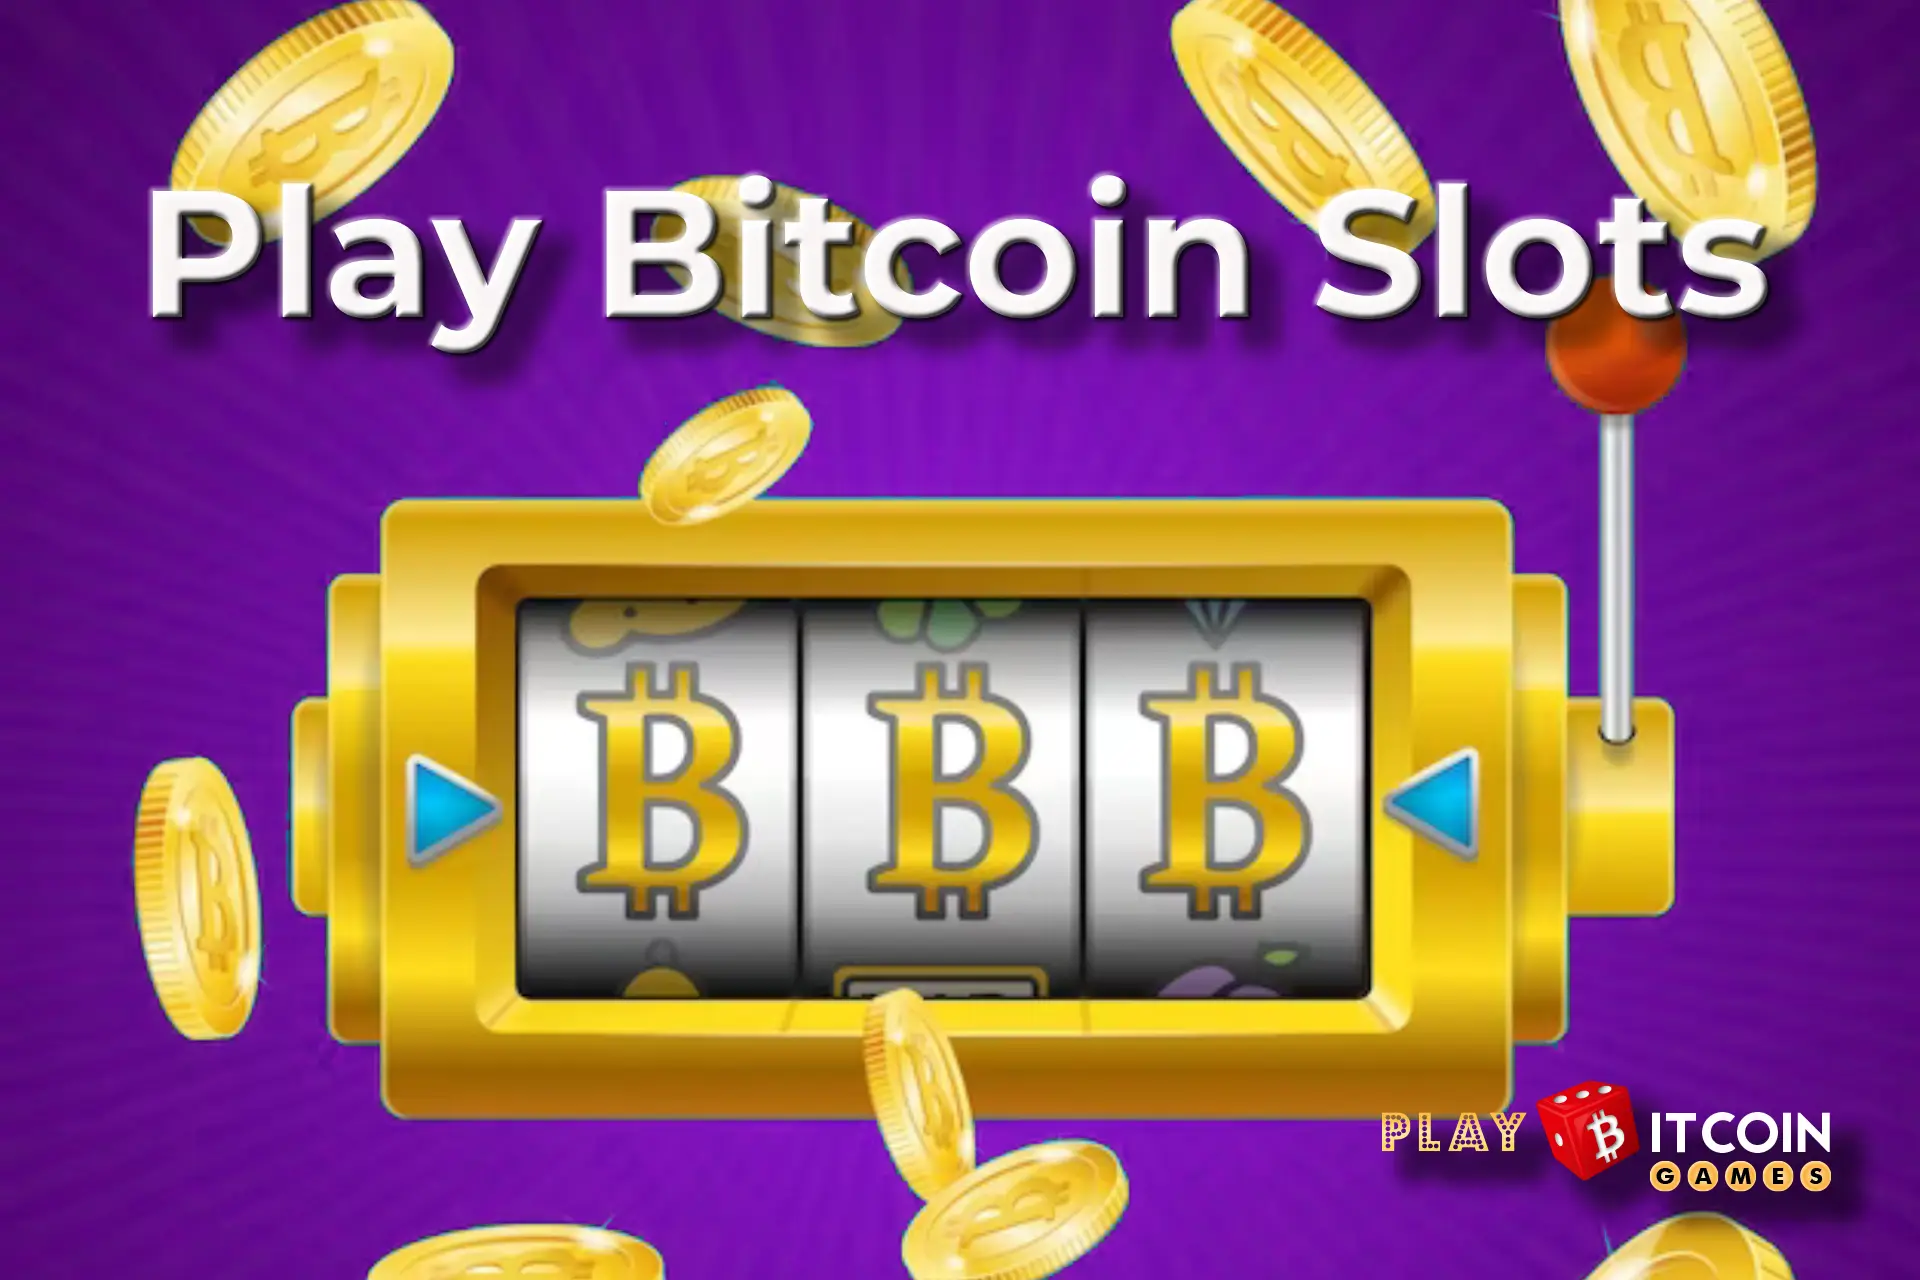 Play Bitcoin Slots at PBG: Top 3 Games to Win Big